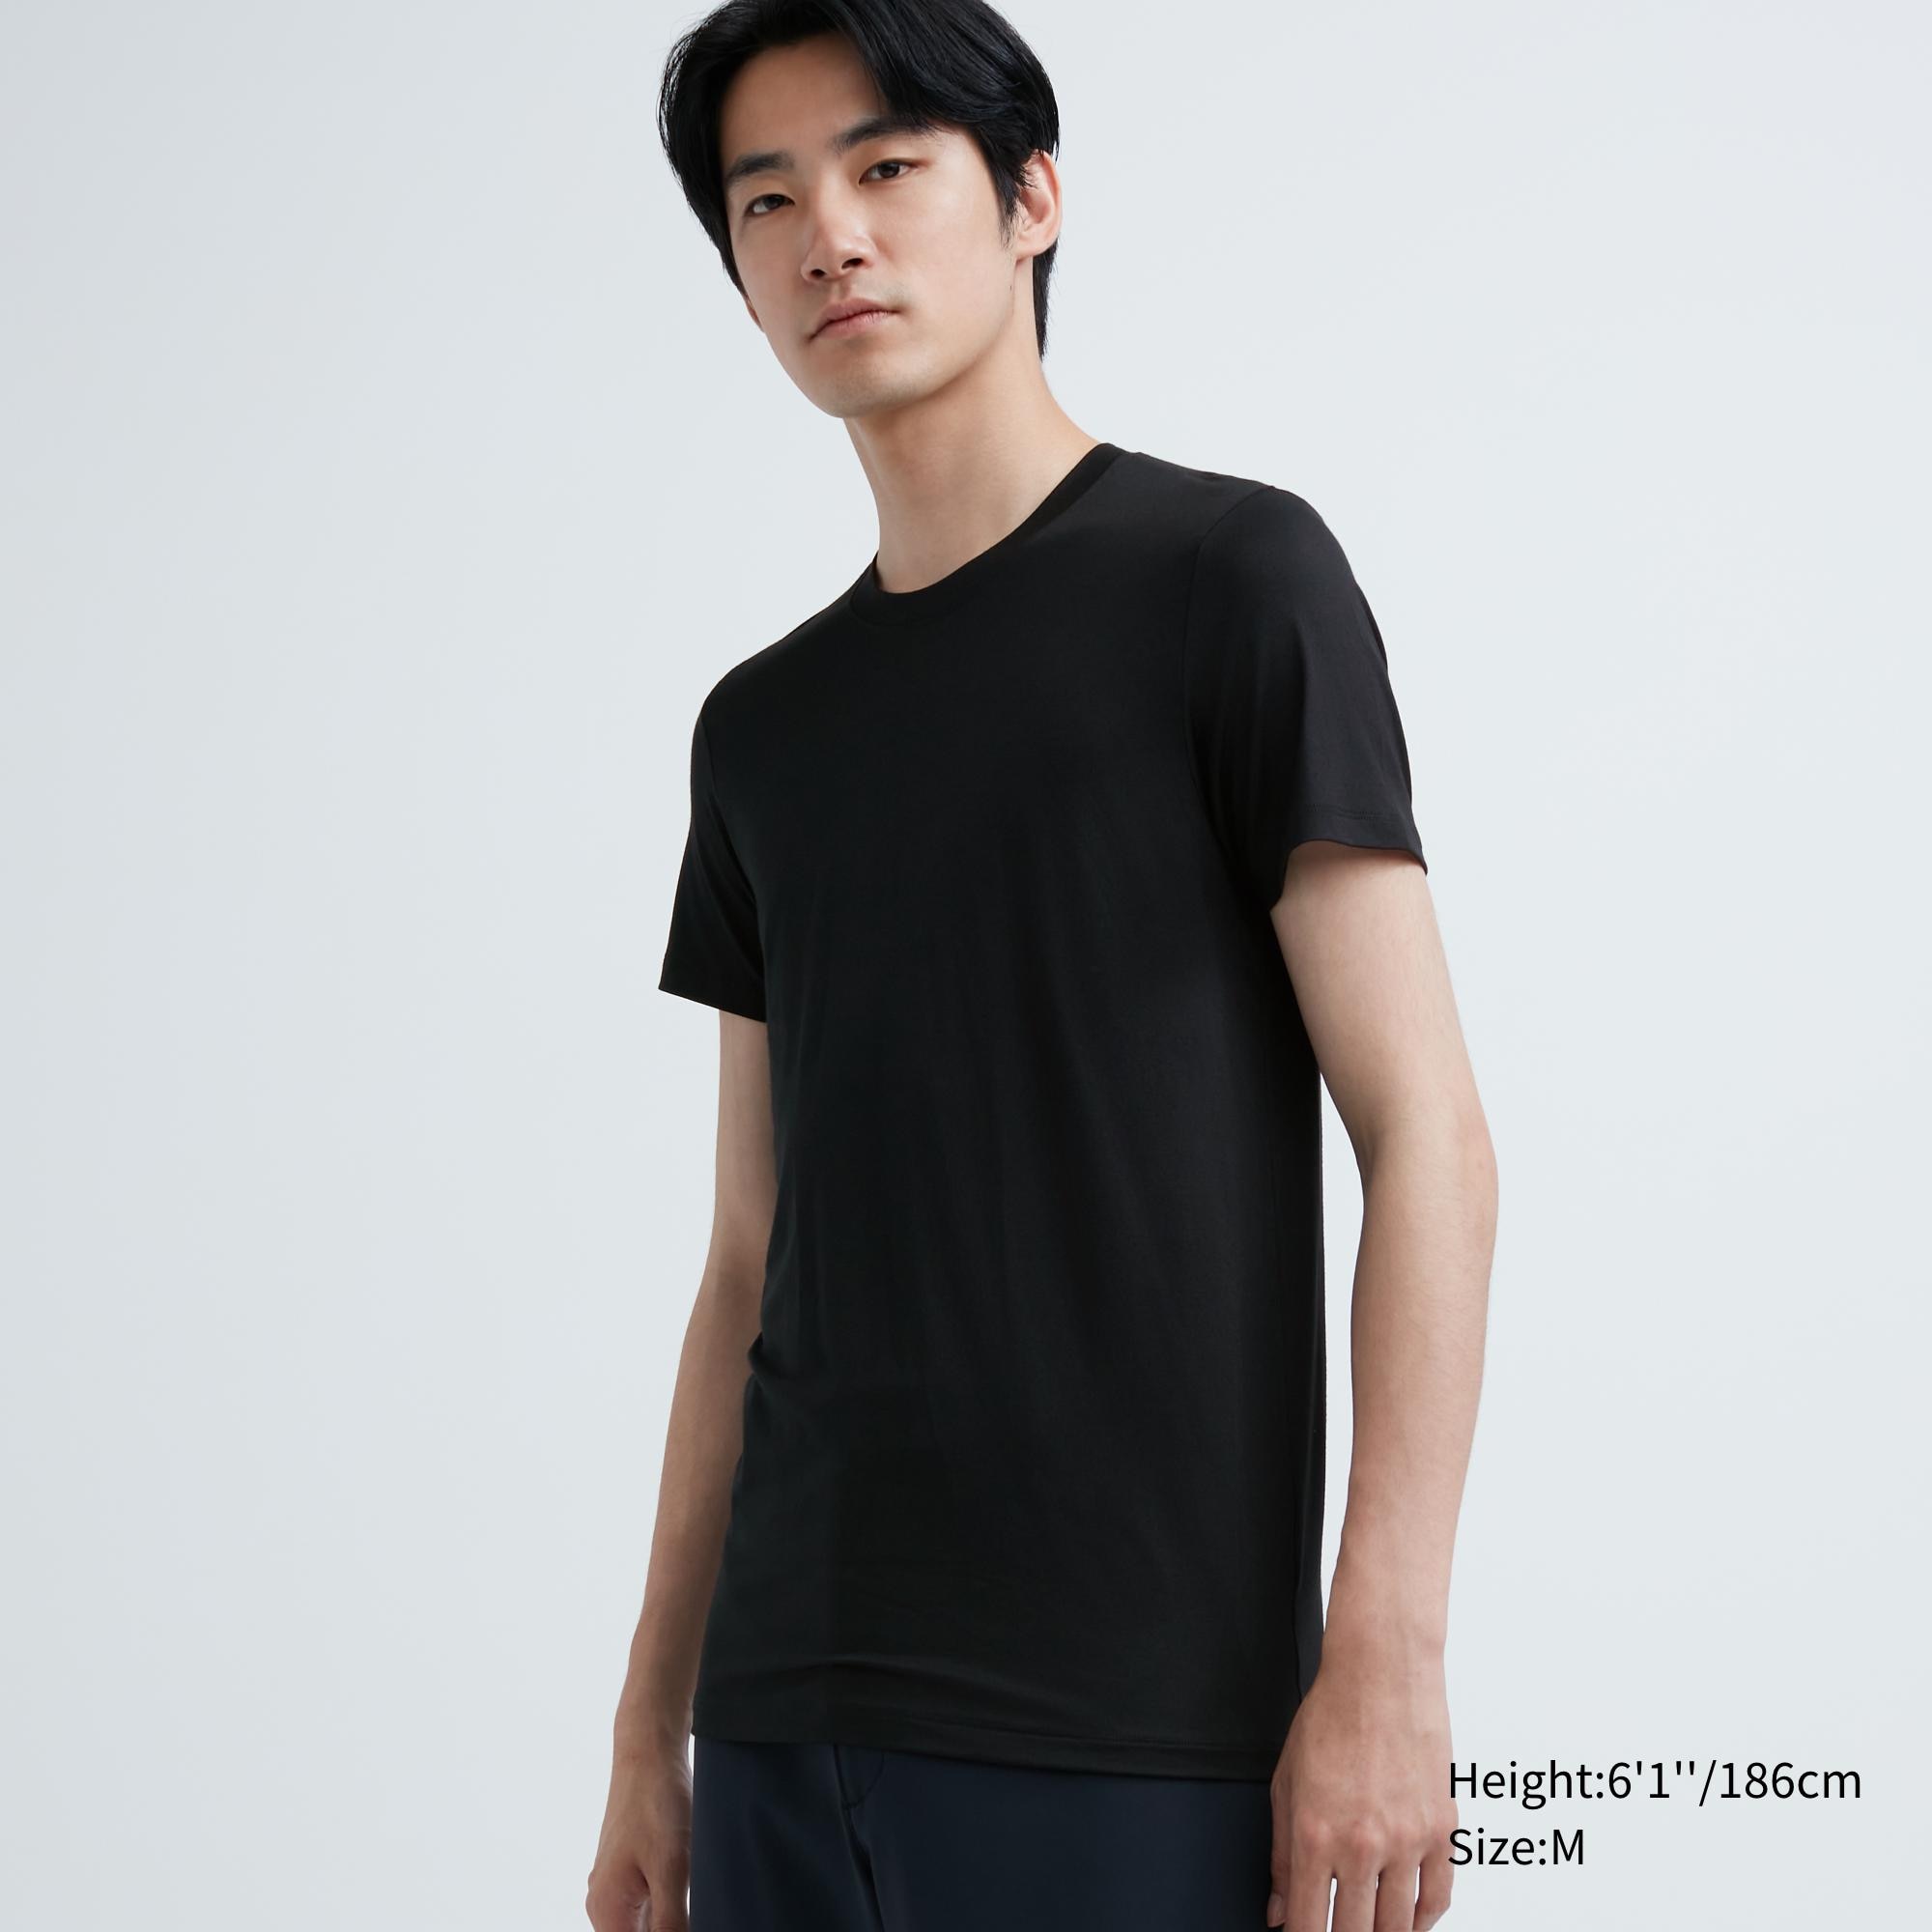 uniqlo black shirt for men Mens Fashion Tops  Sets Tshirts  Polo  Shirts on Carousell